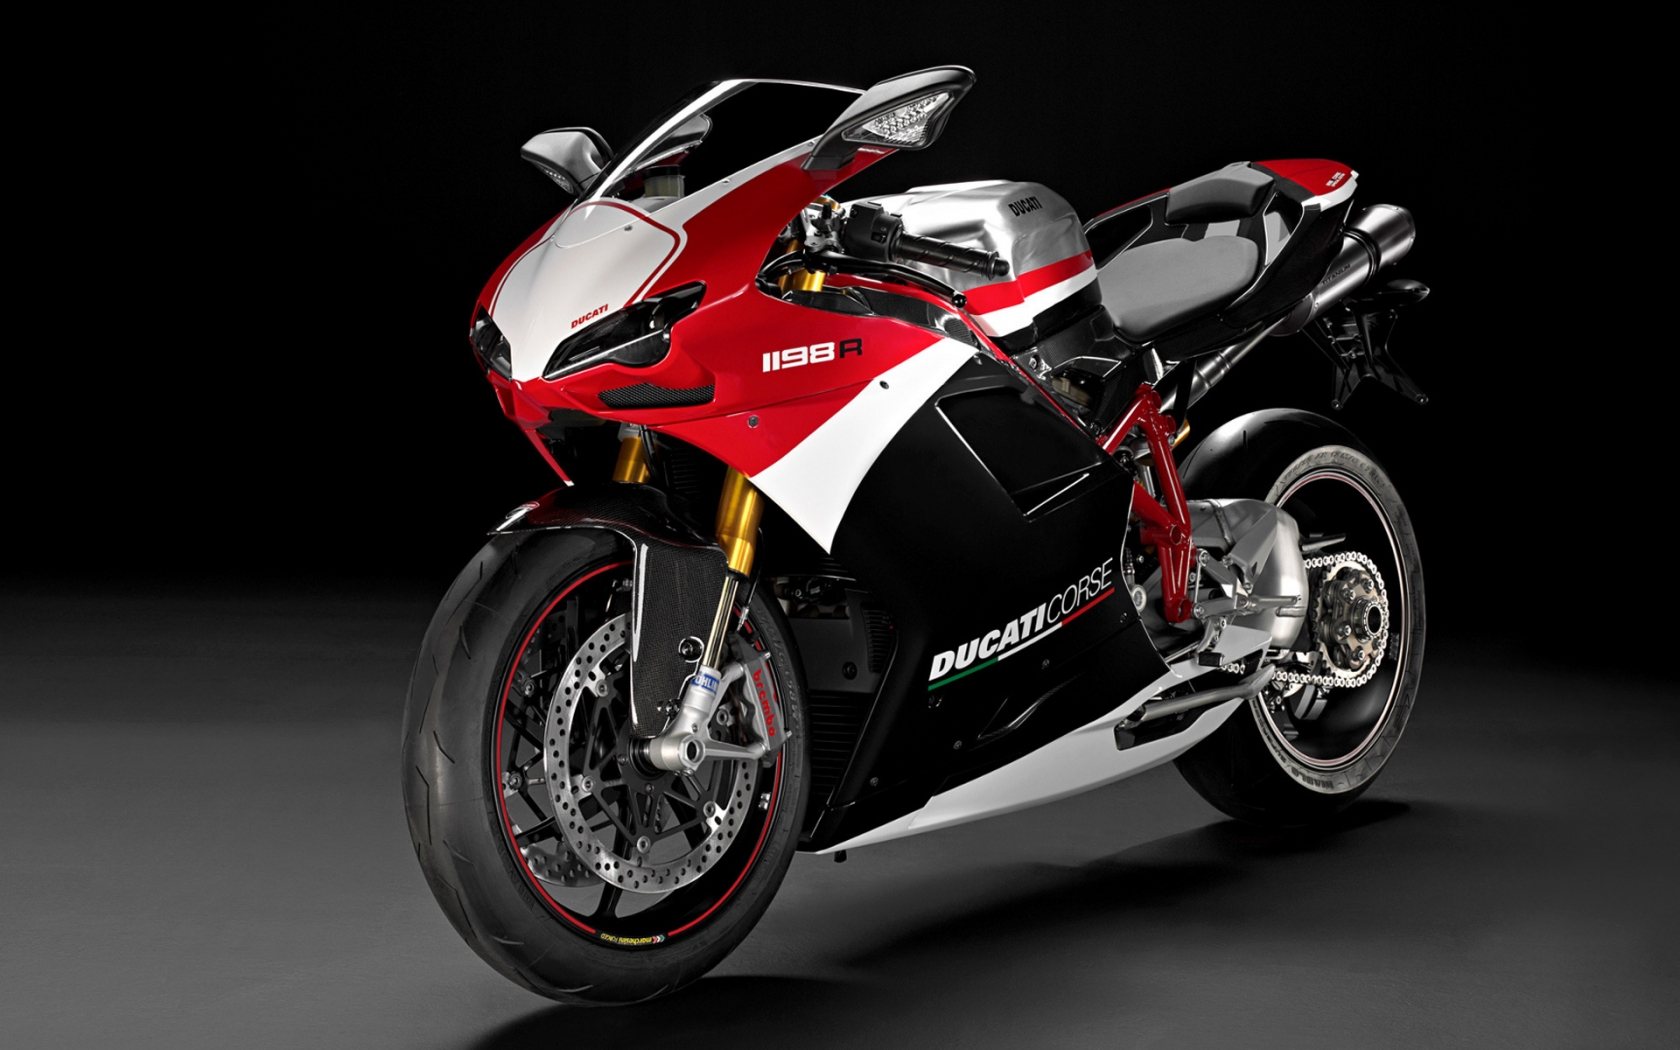 Ducati Superbike-1198-R-Corse for 1680 x 1050 widescreen resolution